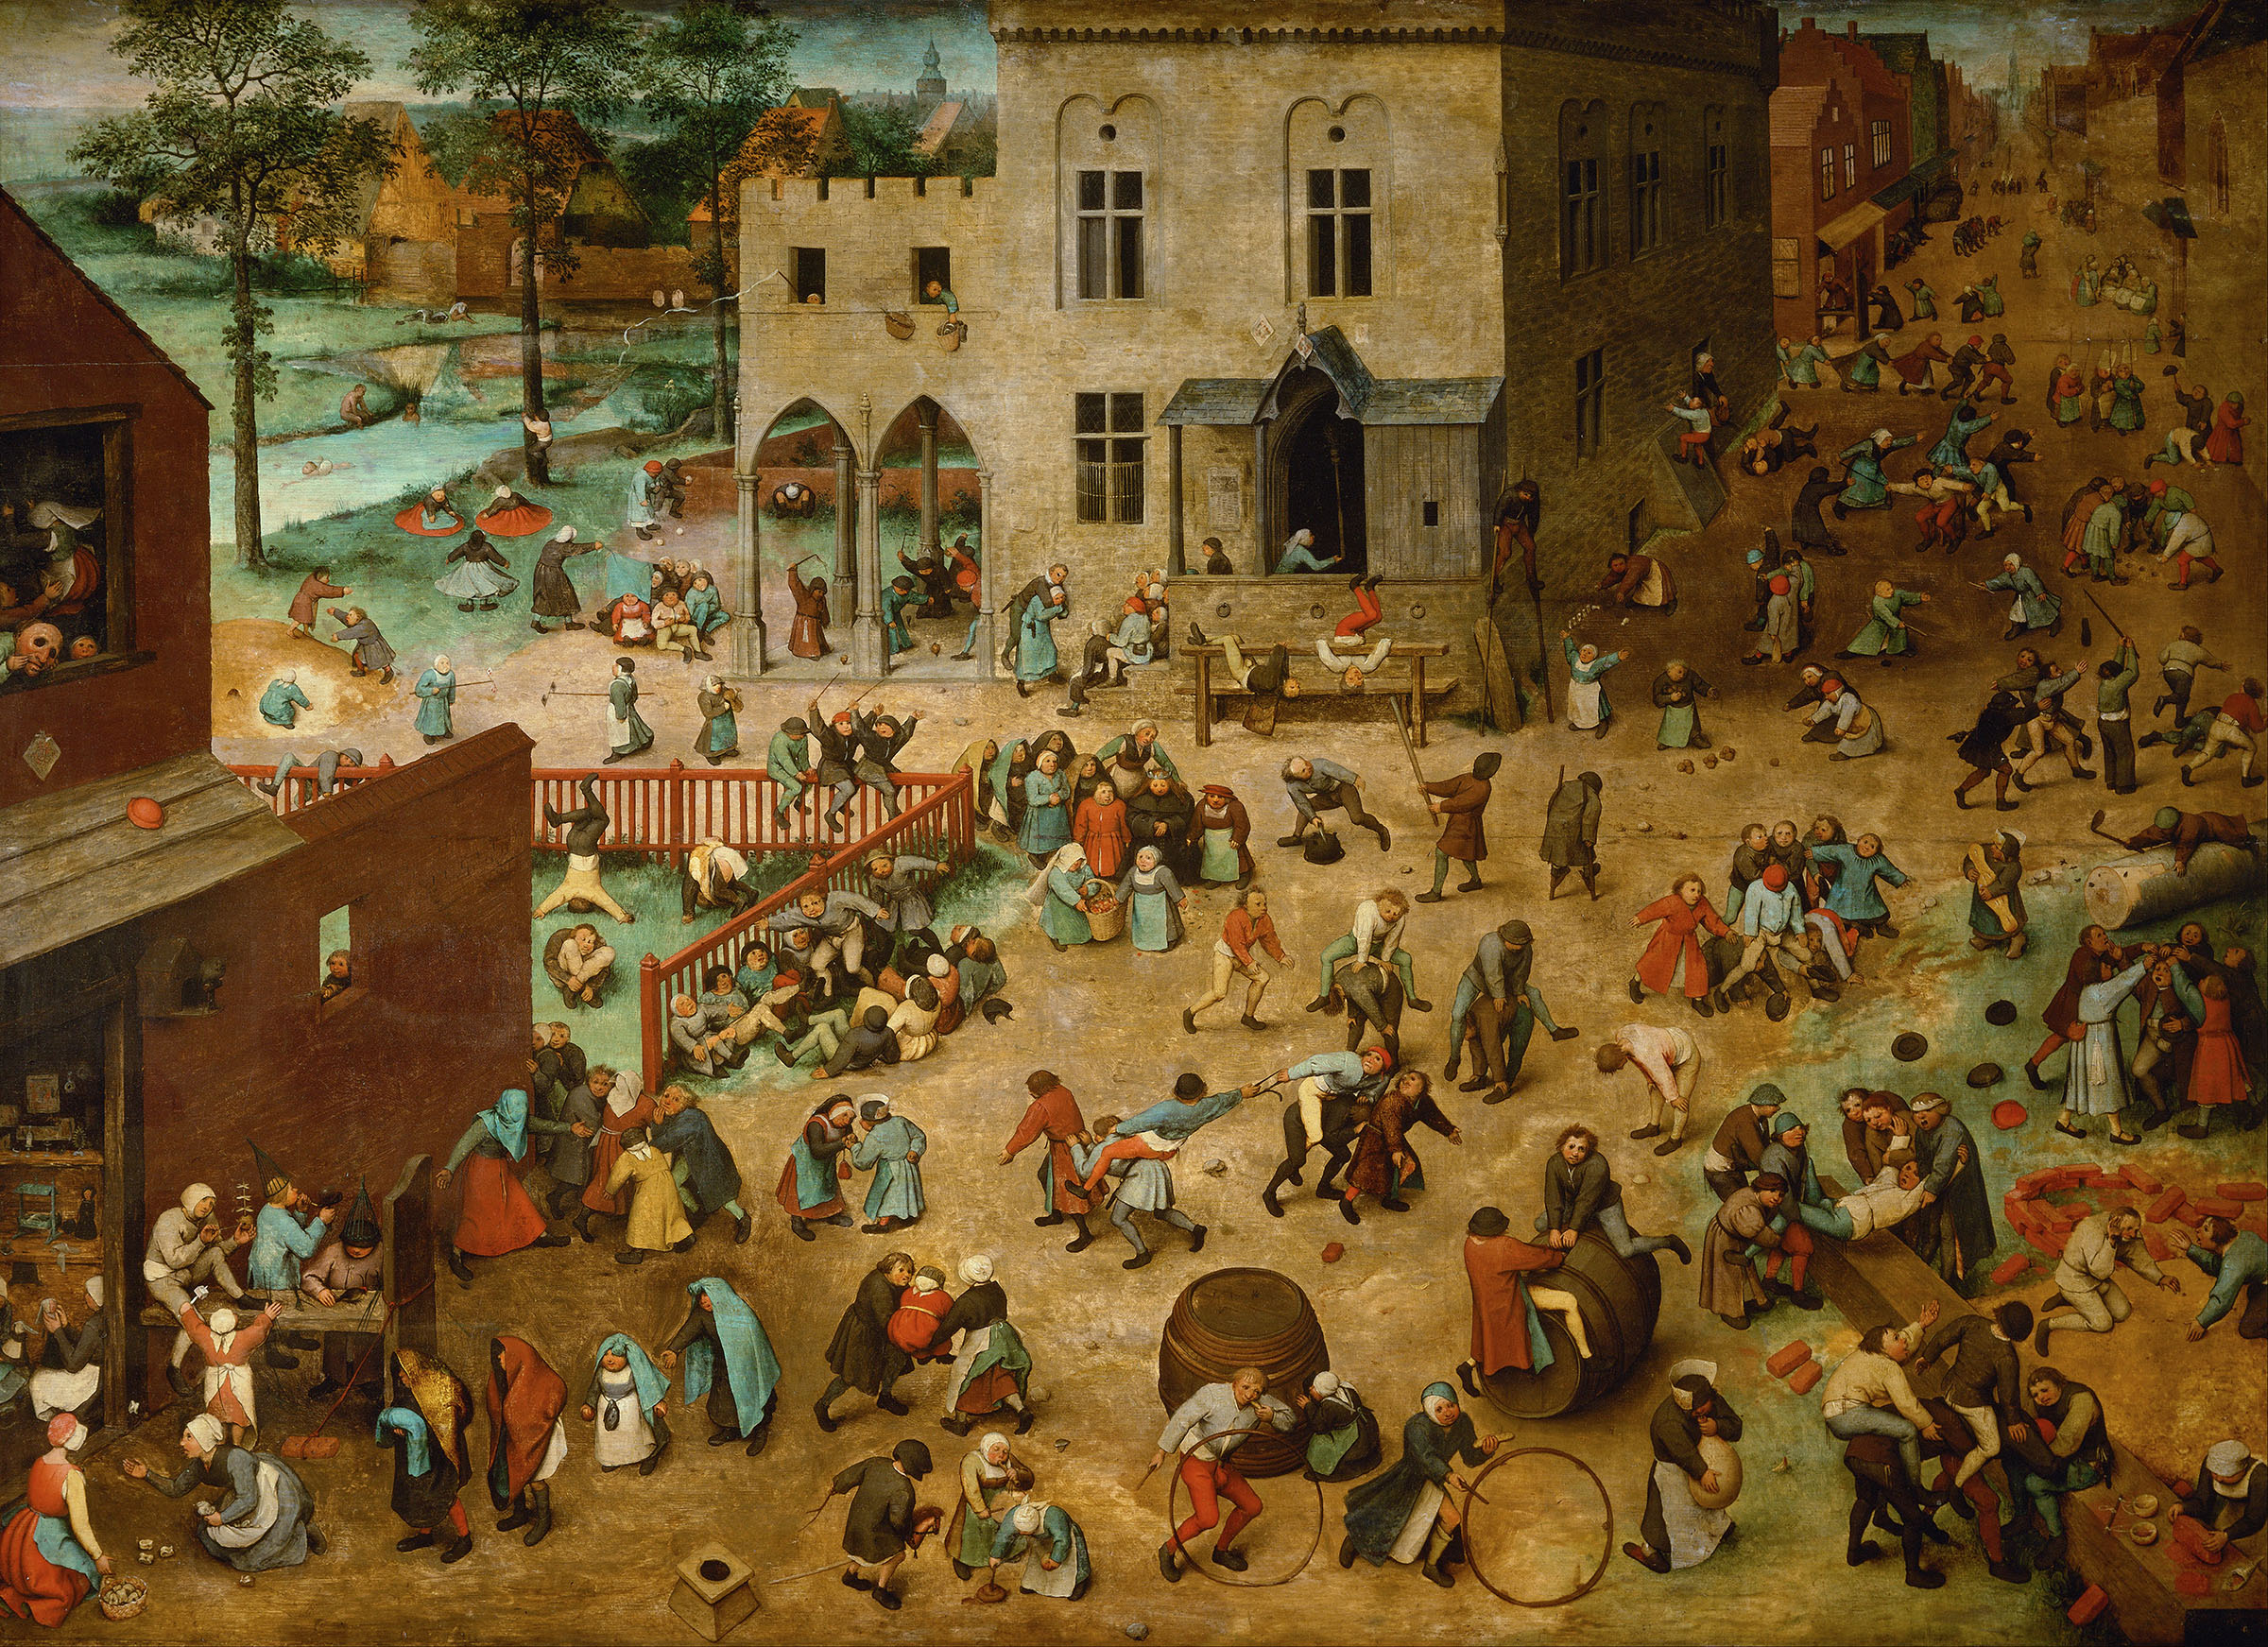 Auf dem Gemälde sieht man einen großen Platz, auf dem überwiegend Kinder beim Spielen verschiedenster Spiele dargestellt sind. Aufgrund der hohen Anzahl der Figuren und kleinen Szenen kann man auch von einem Wimmelbild sprechen.